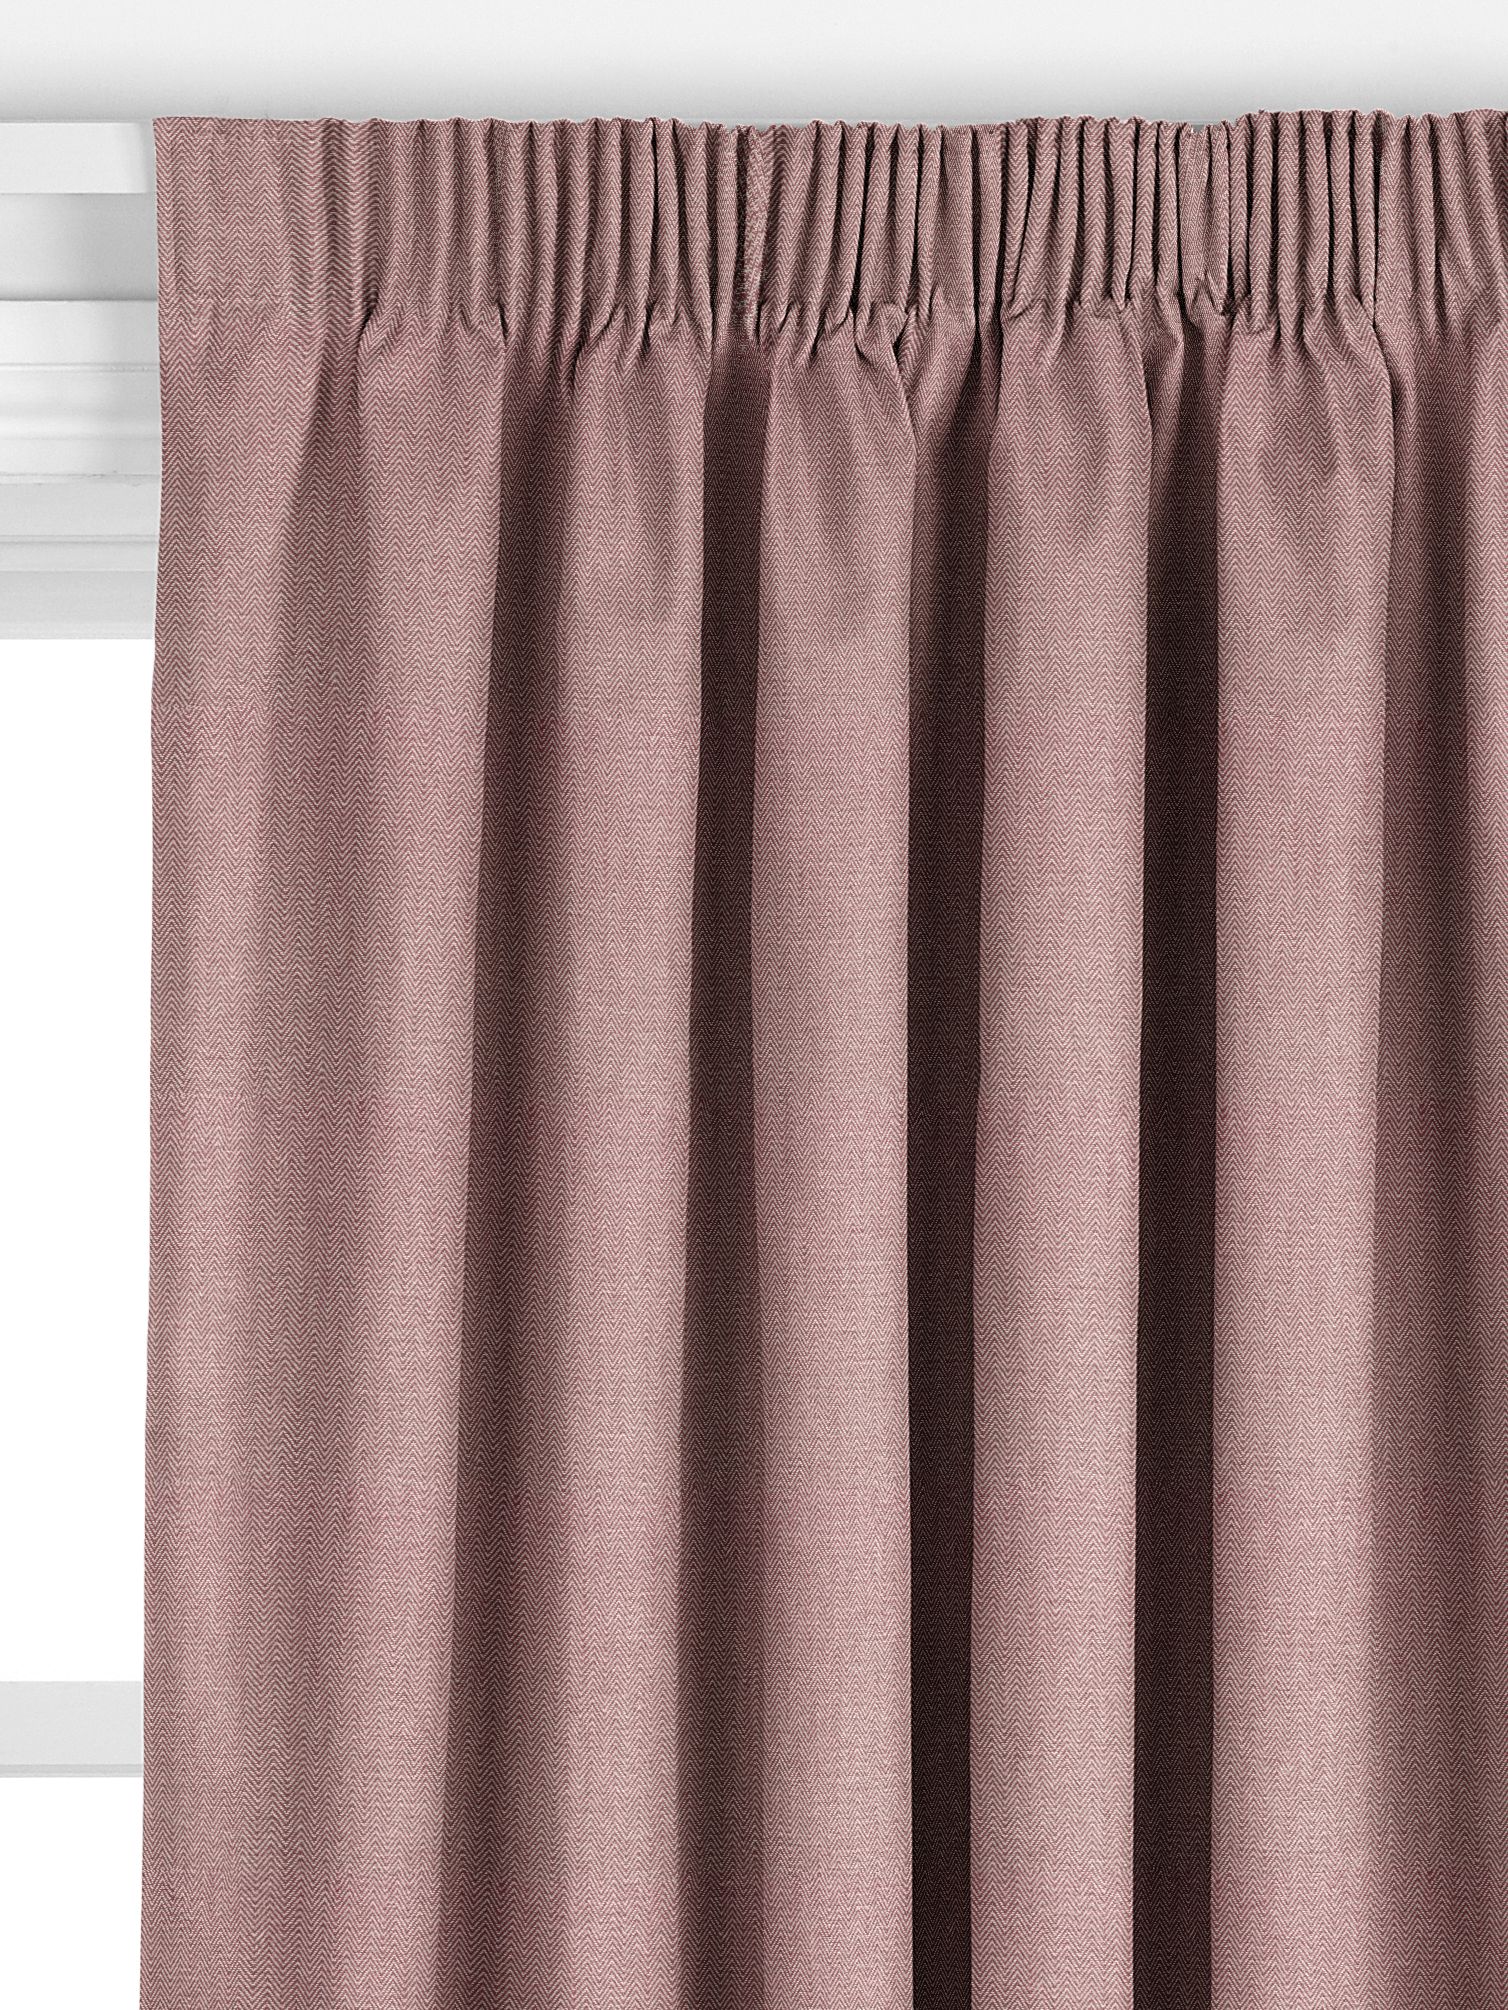 plum curtains